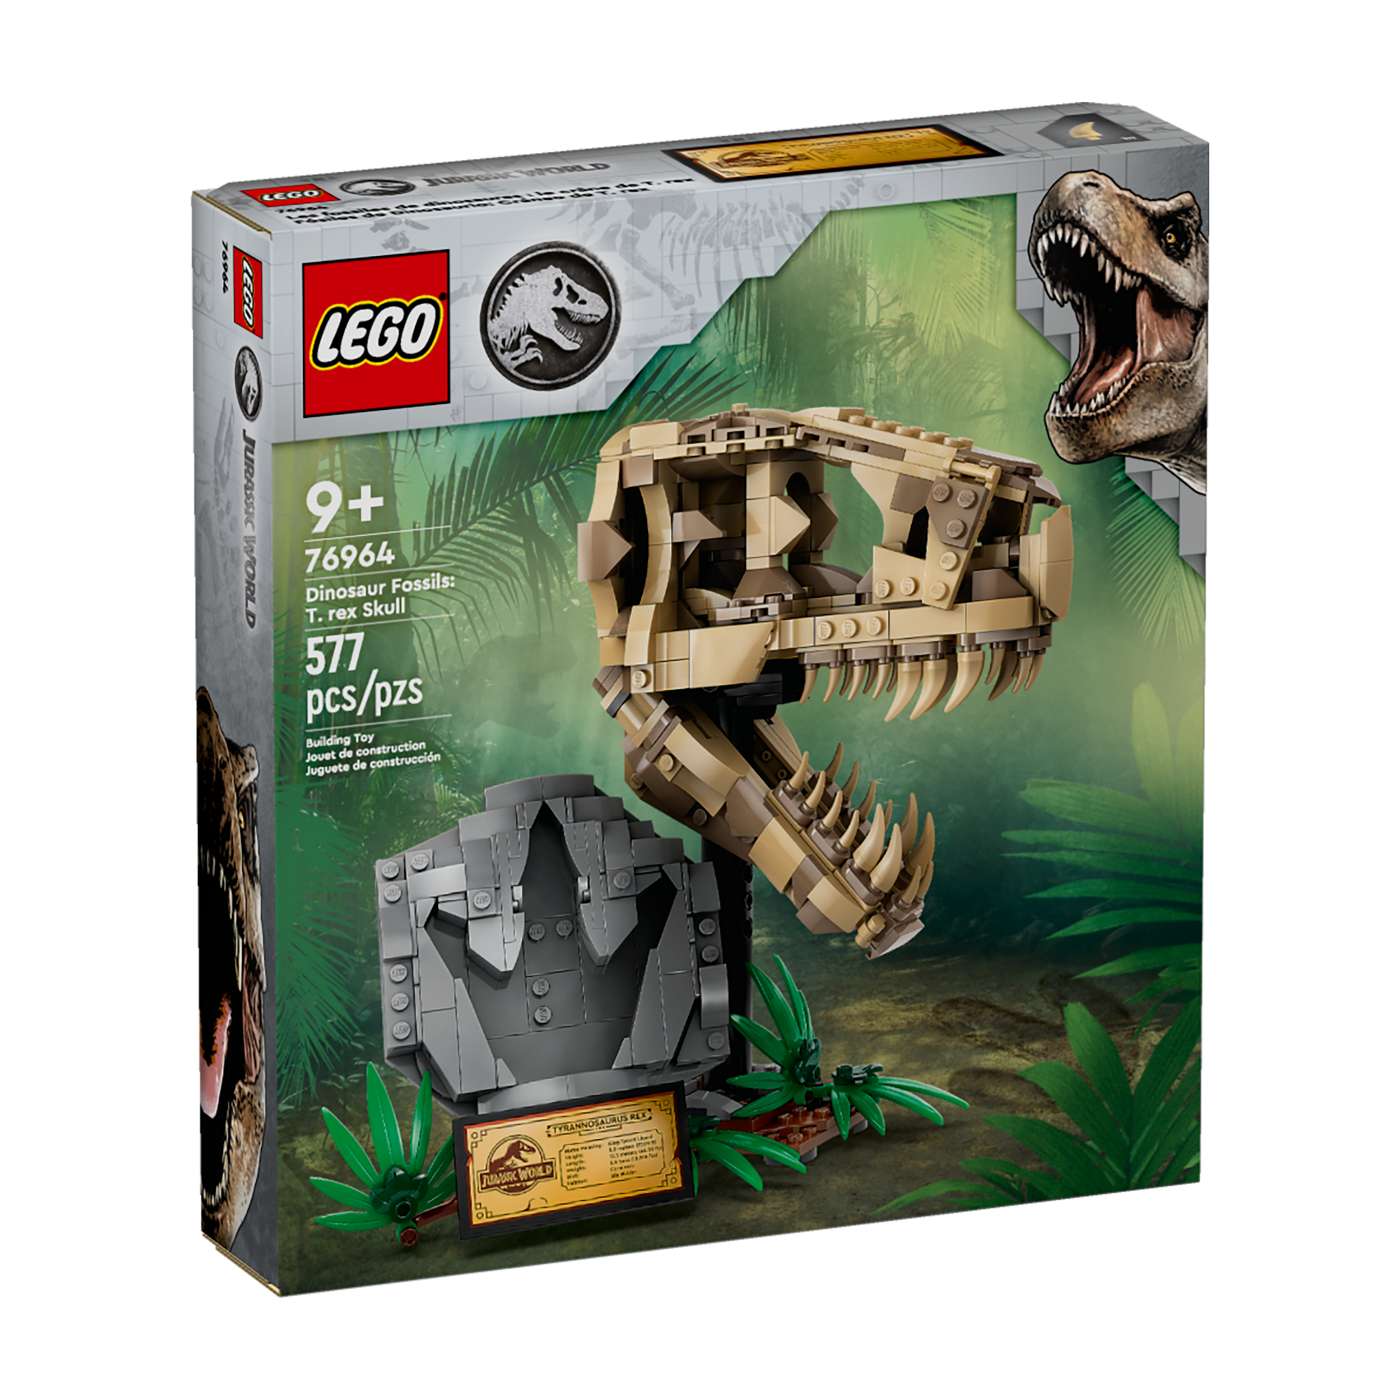 LEGO Jurassic World Dinosaur Fossils: T.rex Skull Set; image 2 of 2